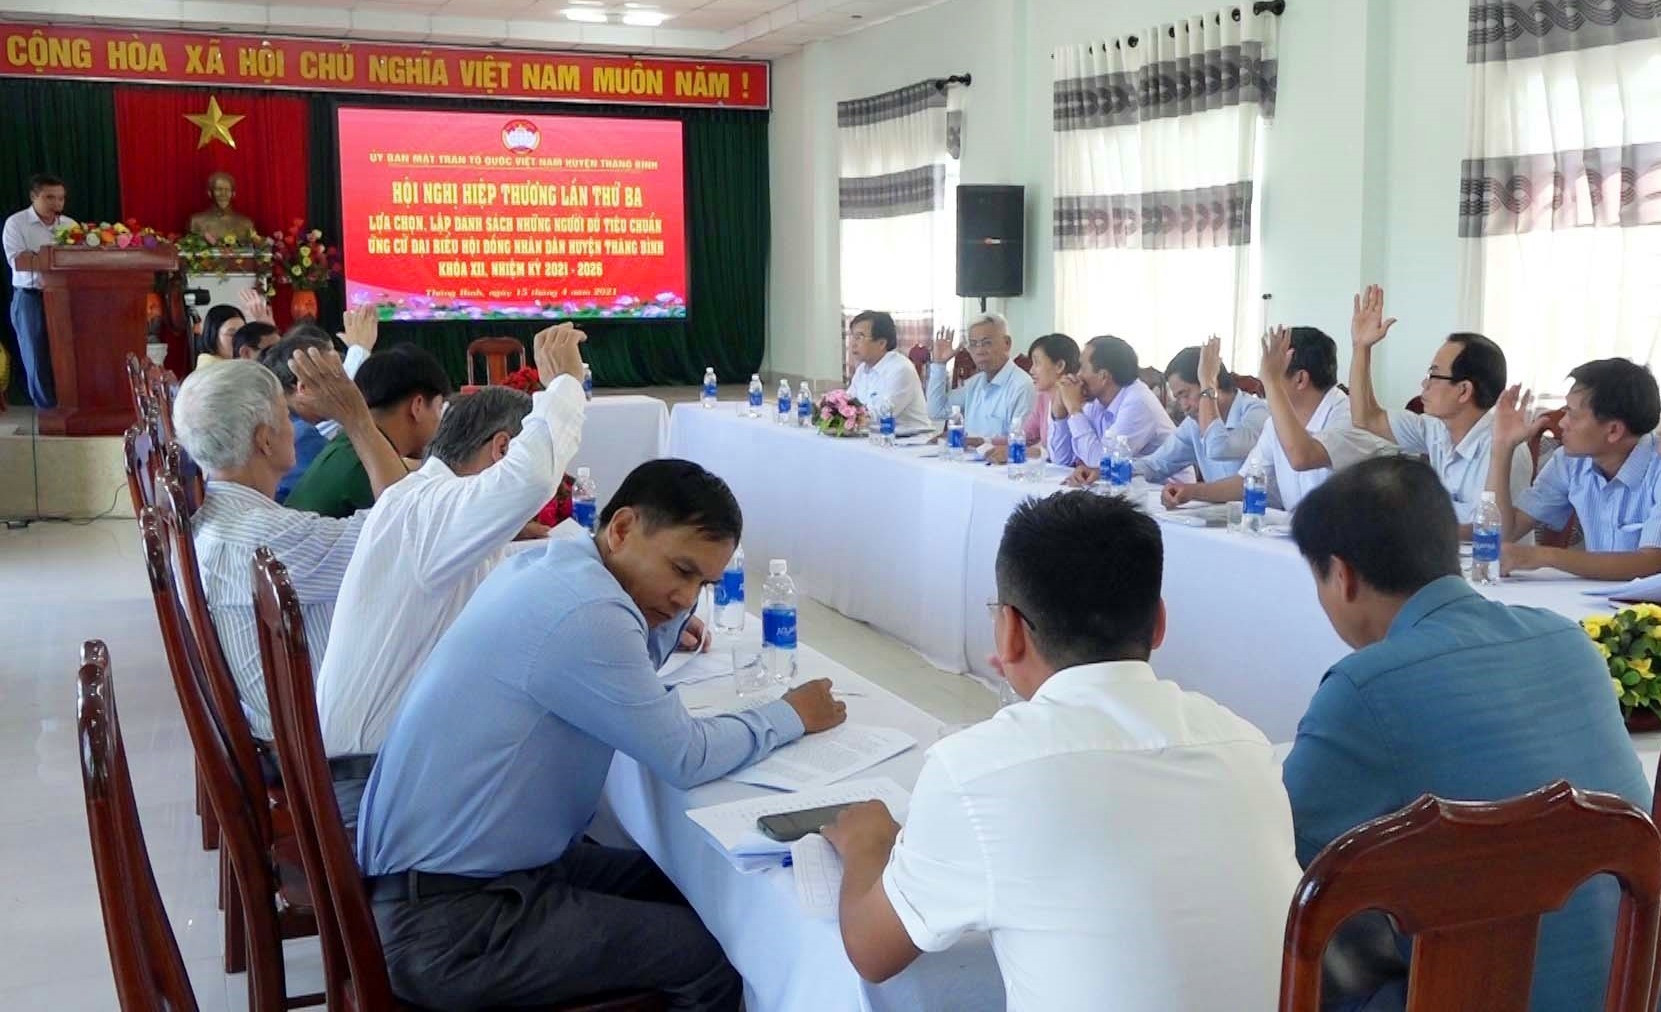 Biểu quyết thống nhất những người đủ điều kiện ứng cử đại biểu HĐND huyện Thăng Bình, nhiệm kỳ 2021 - 2026. Ảnh: M.T Tại hội nghị các đại biểu nghe báo cáo tình hình và